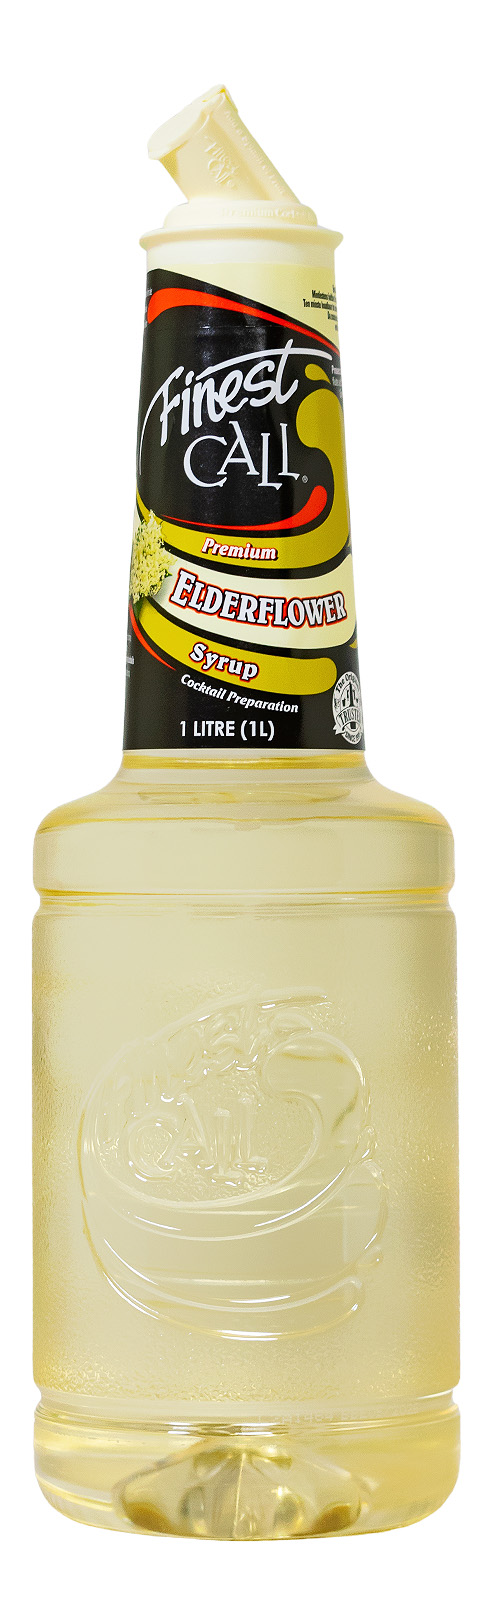 Finest Call Elderflower Sirup - 1 Liter